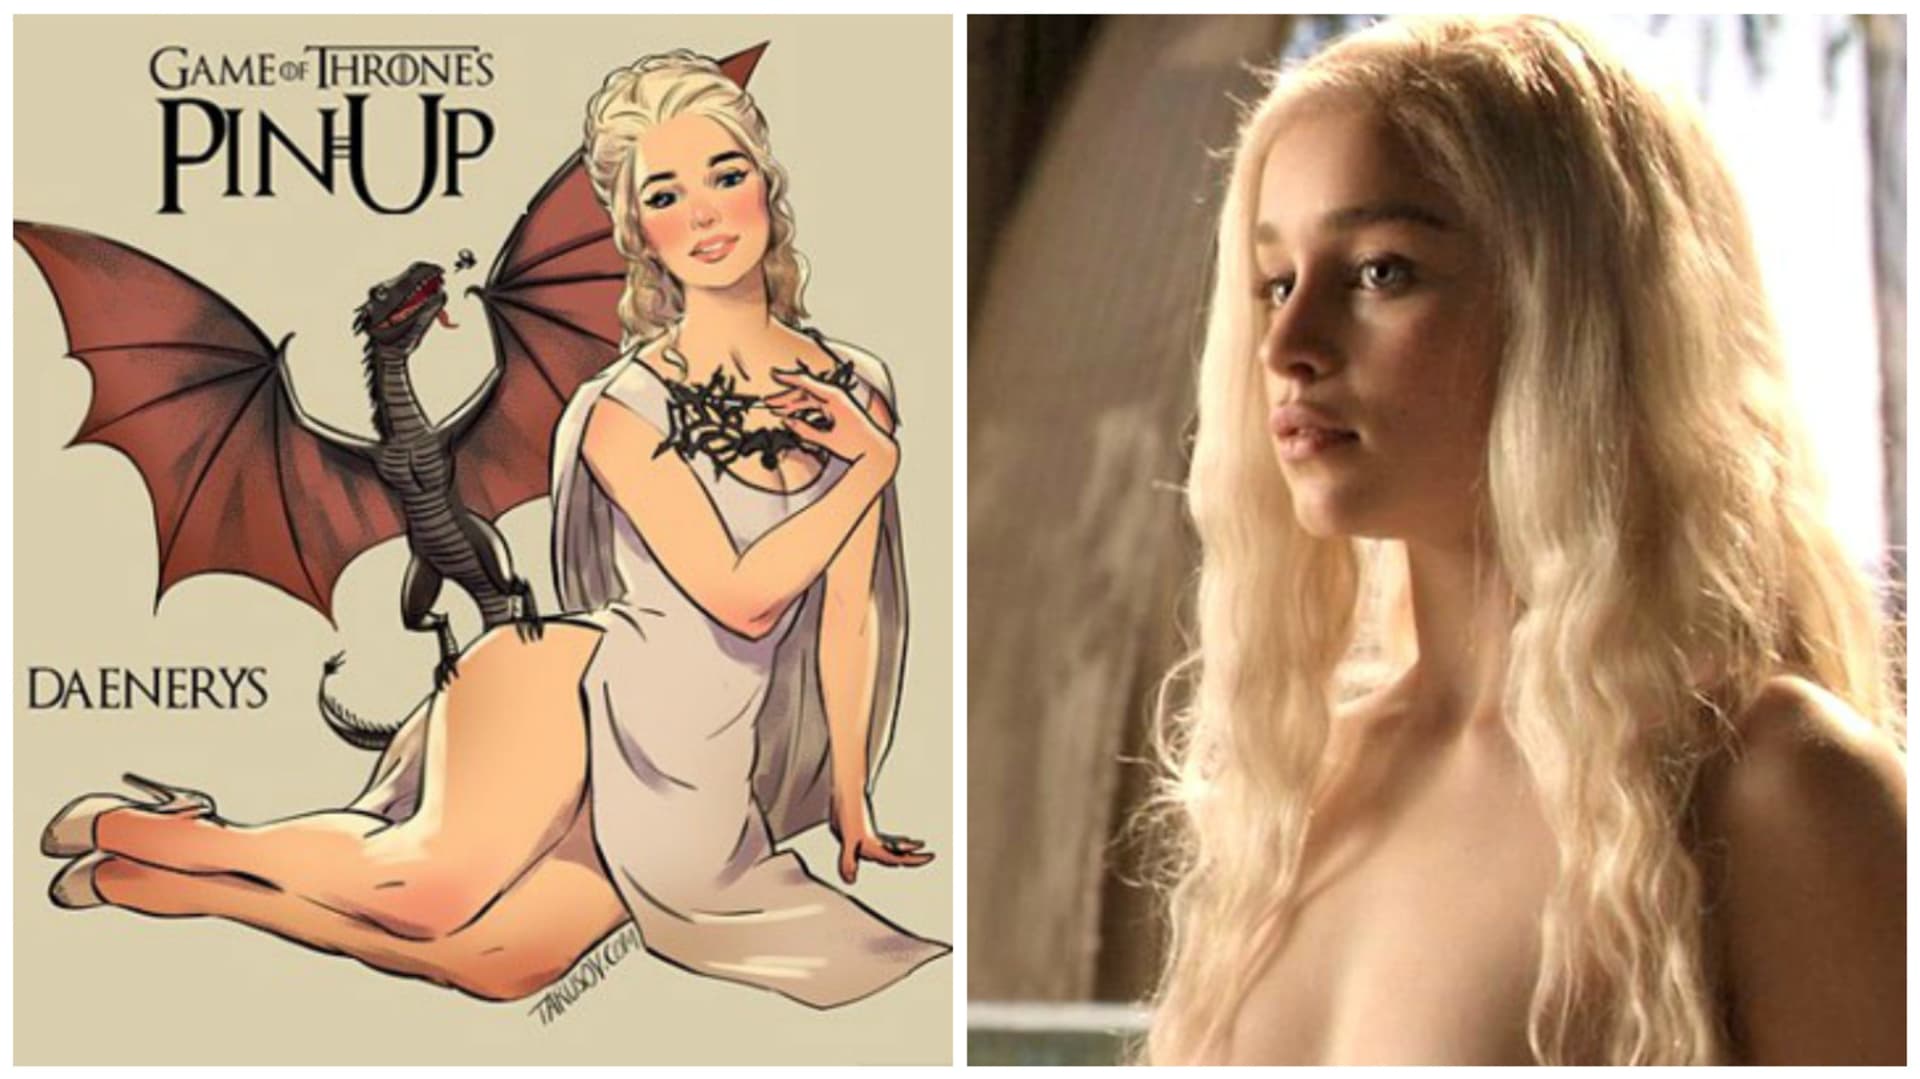 Daenerys ze Hry o trůny jako pin-up girl